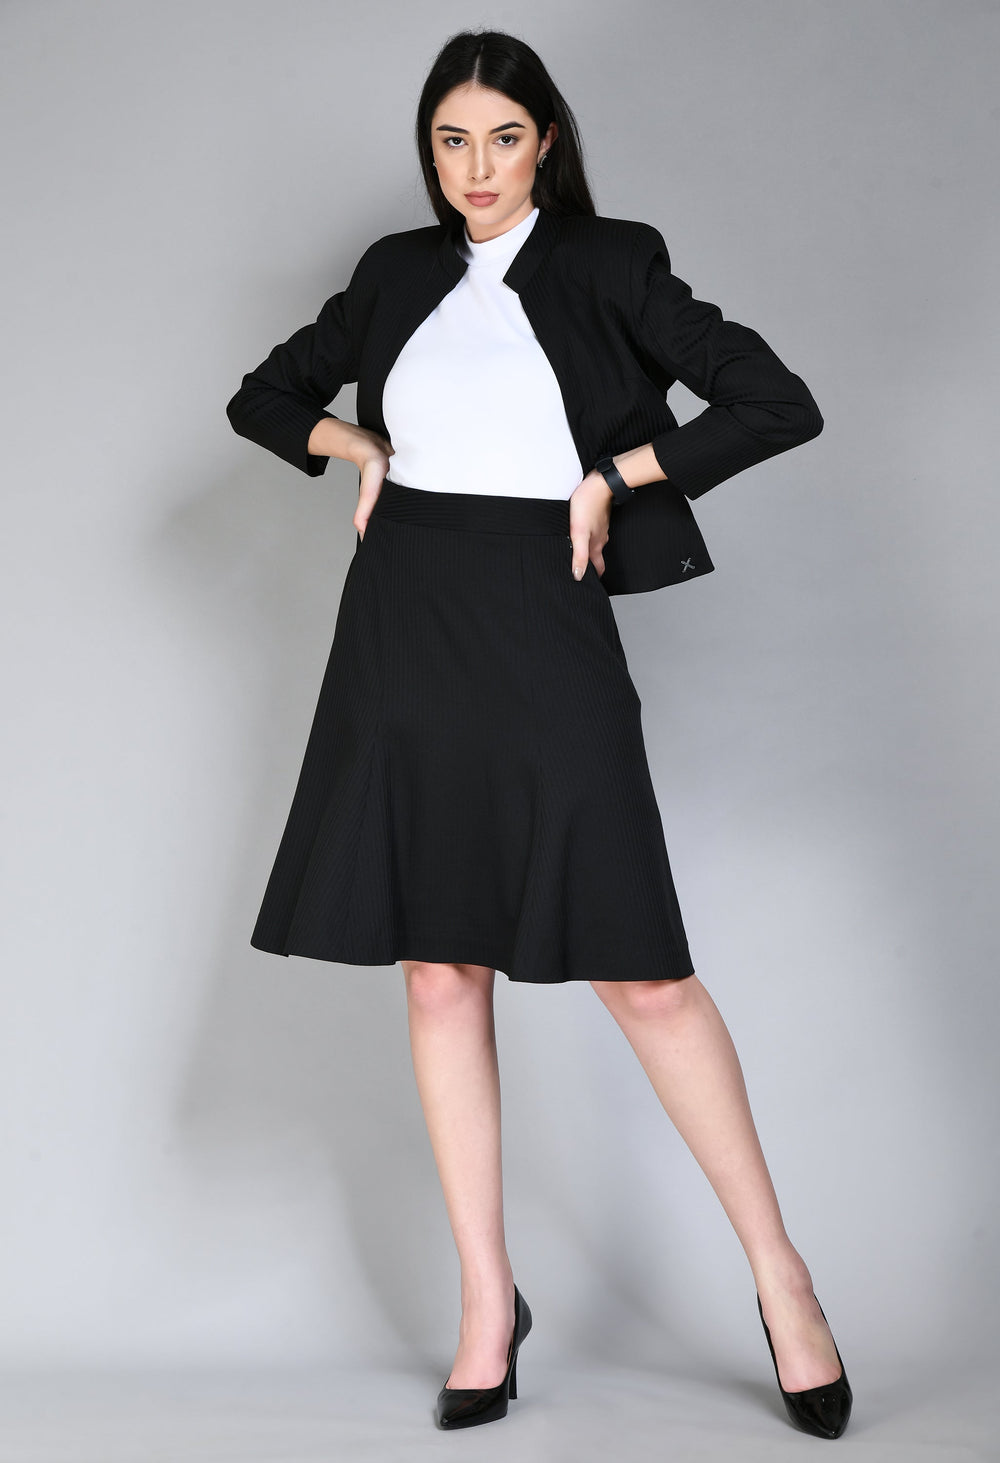 Black-Cotton-Blend-Striped-Short-Blazer-A-Line-Skirt-Suit